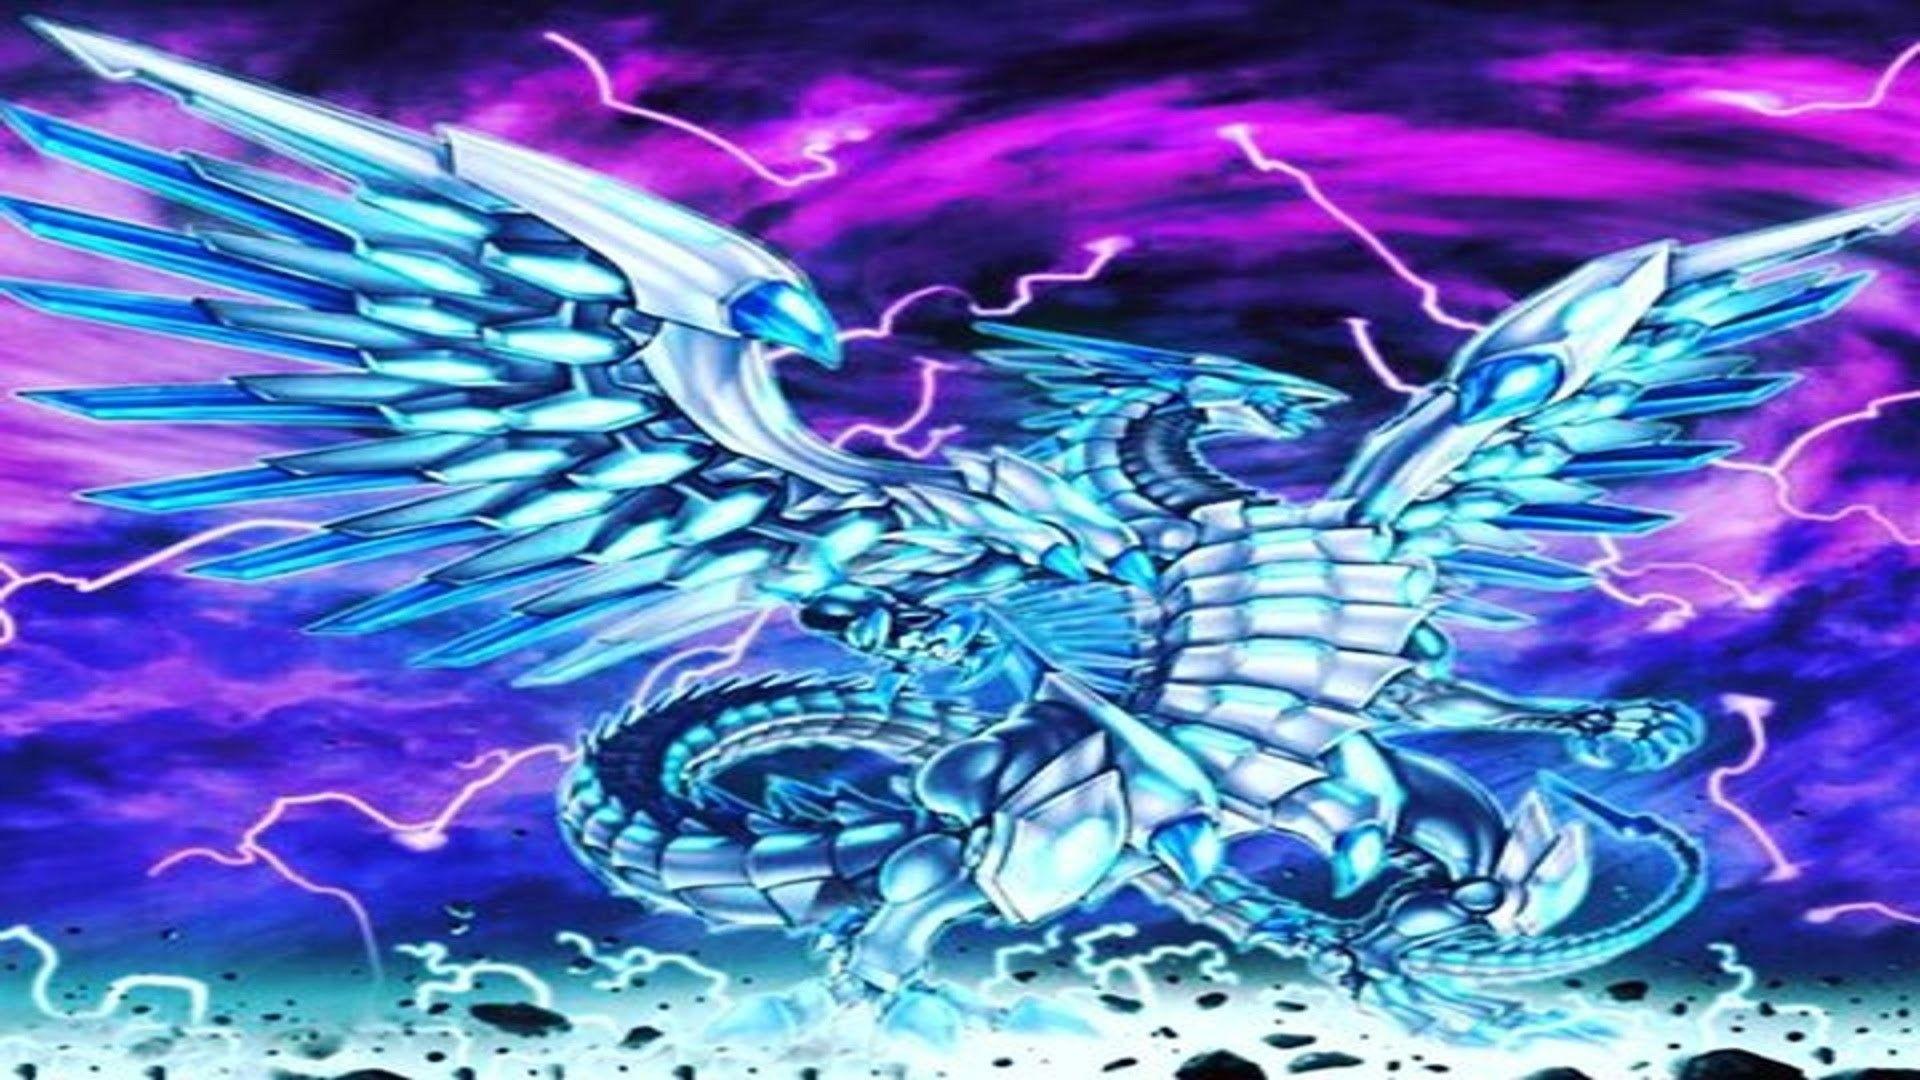 Blue Eyes White Dragon Wallpaper